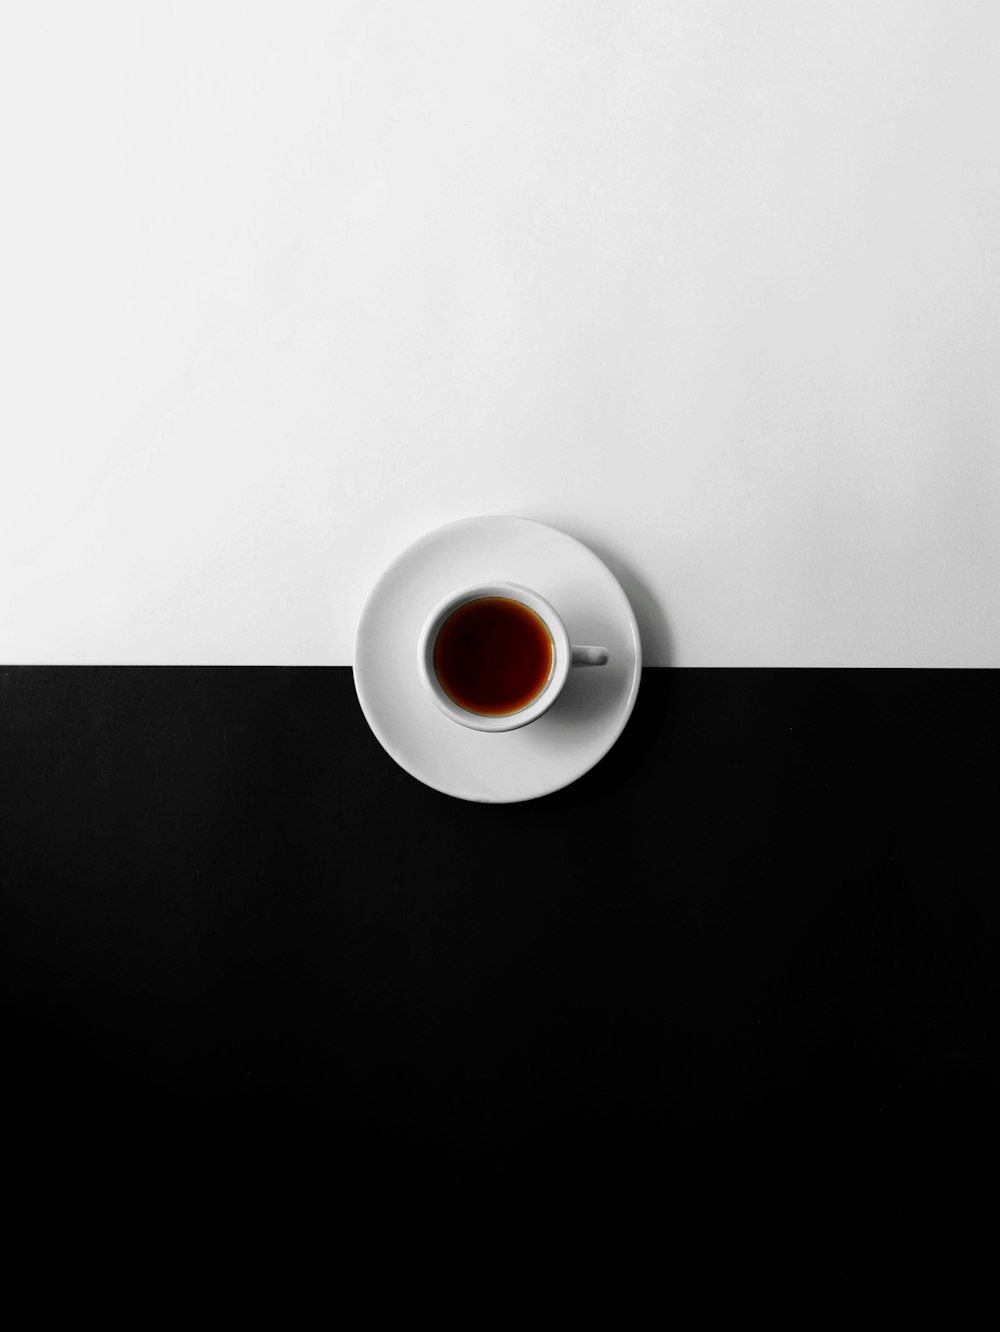 一杯のコーヒーの平面写真